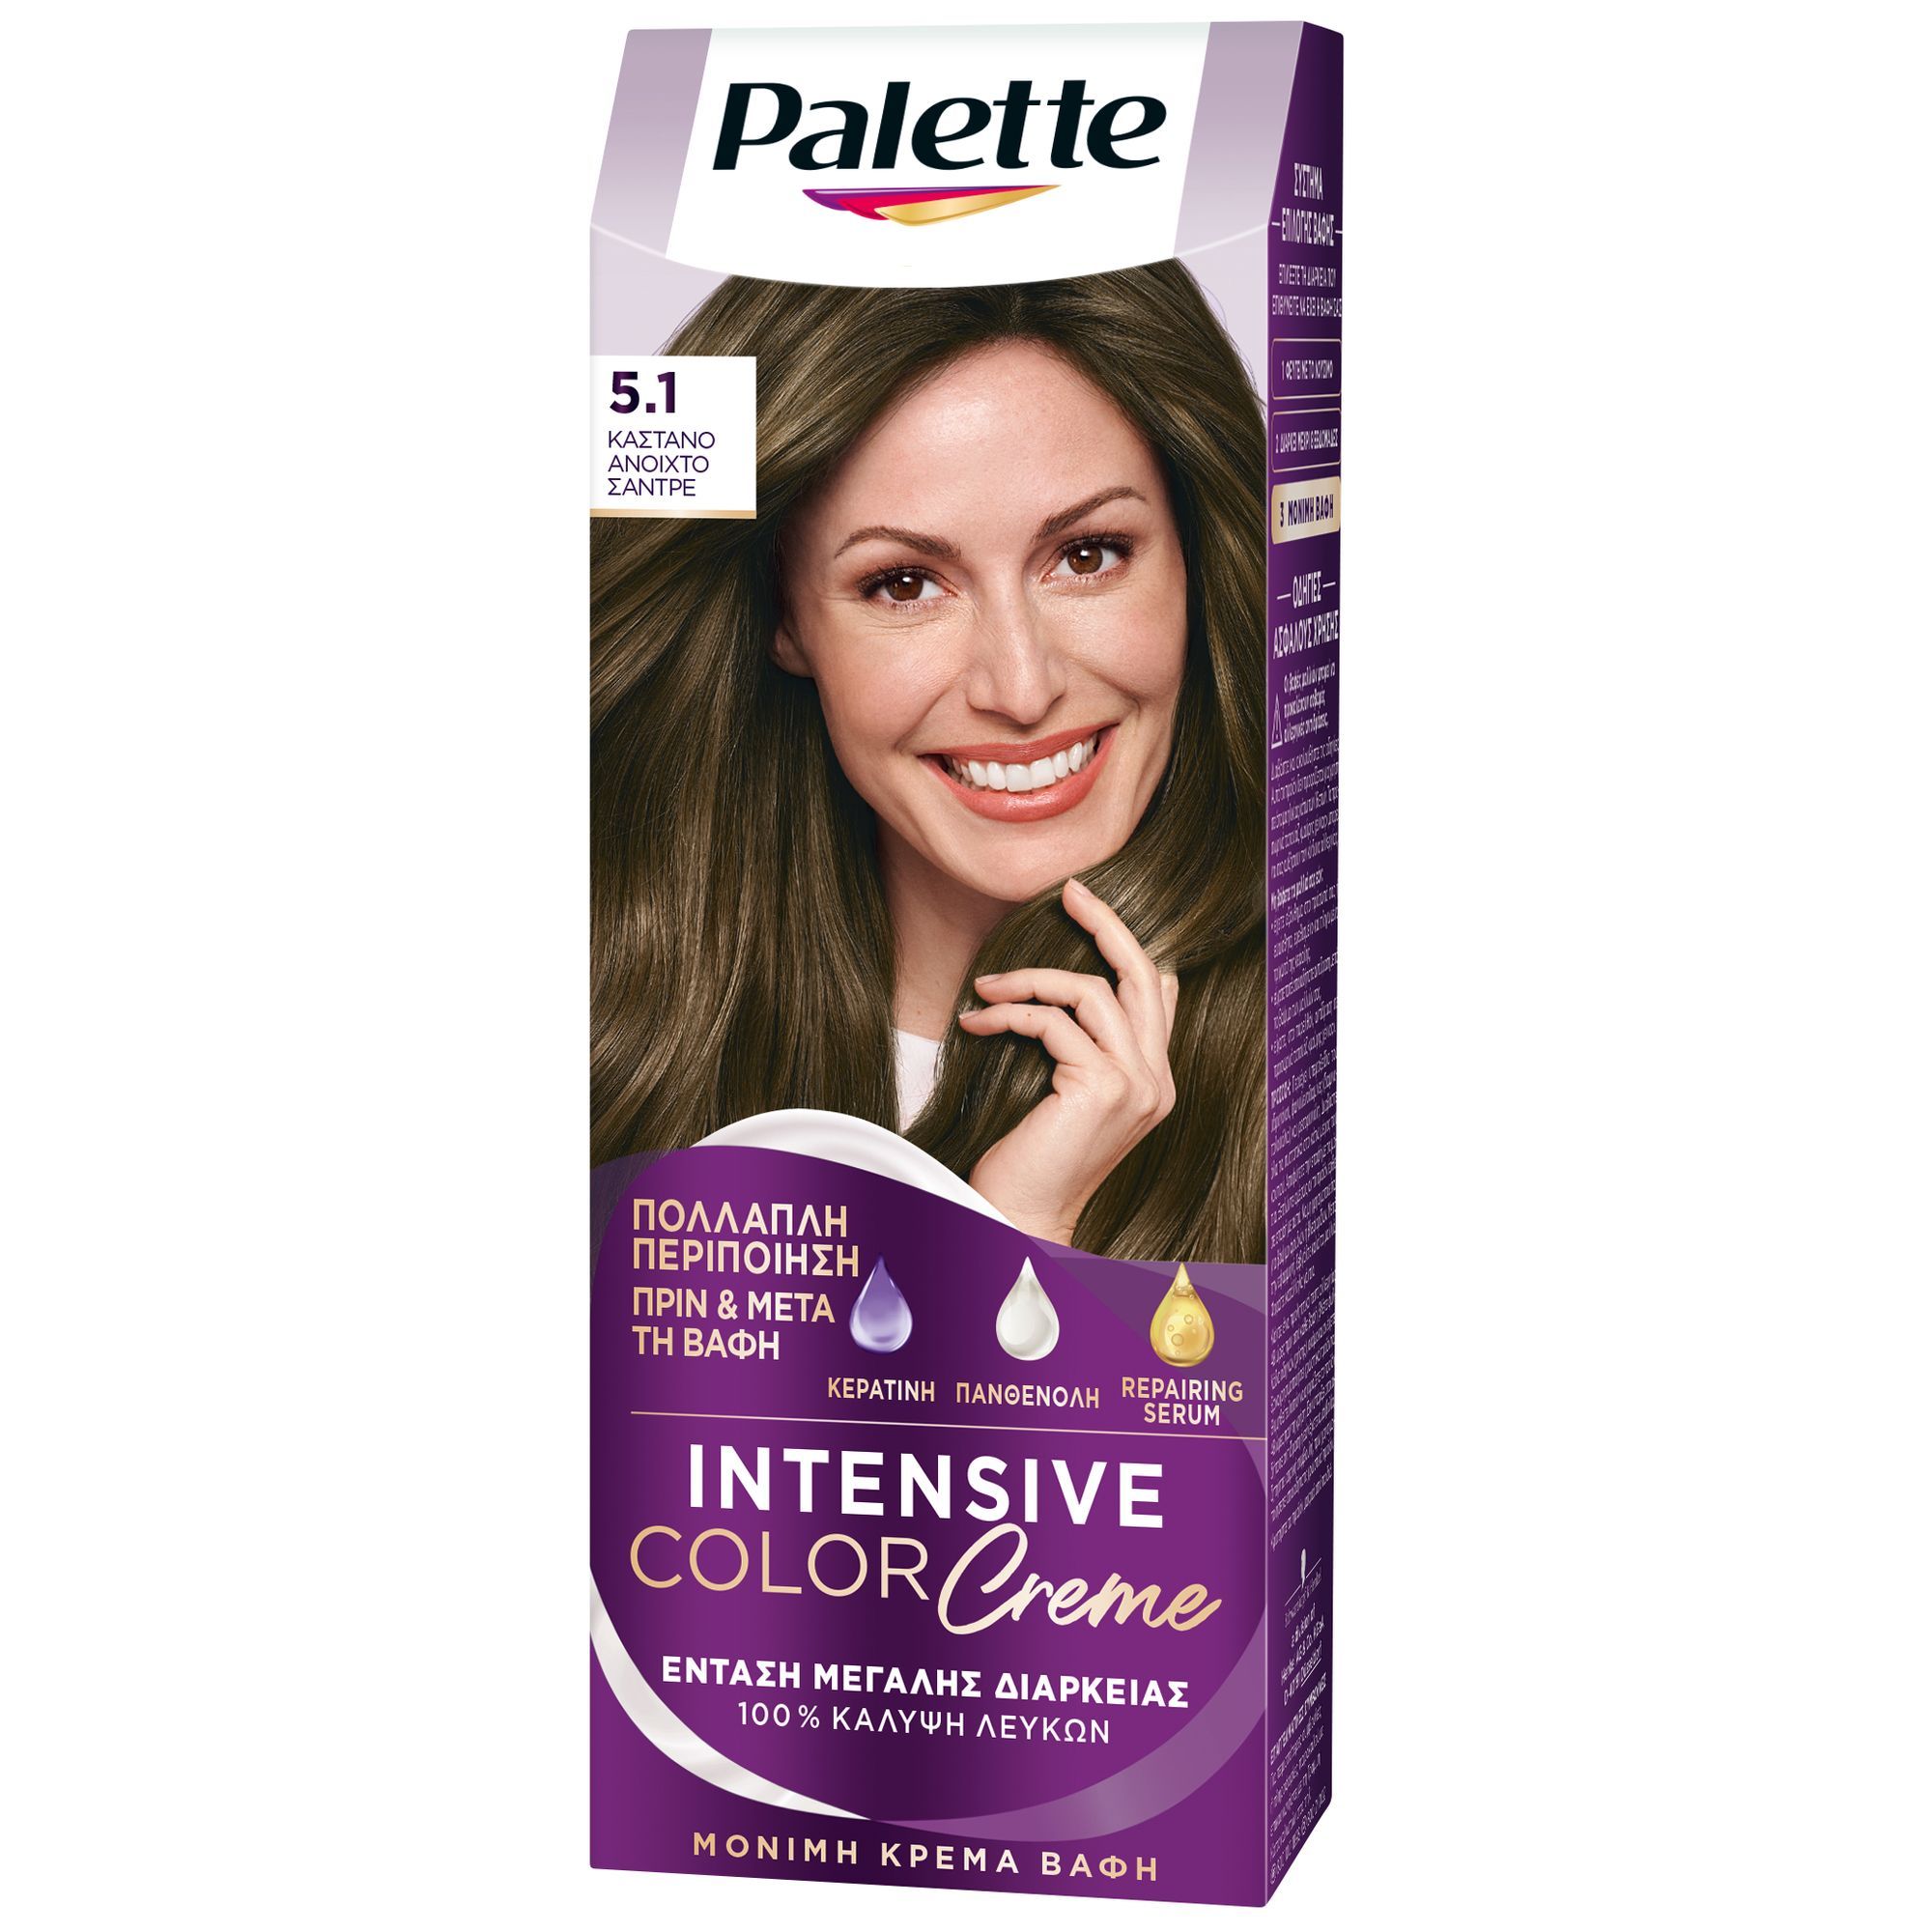 Βαφή Mαλλιών Intensive Color Cream No. 5.1 Ανοιχτό Σαντρέ Palette (50ml)